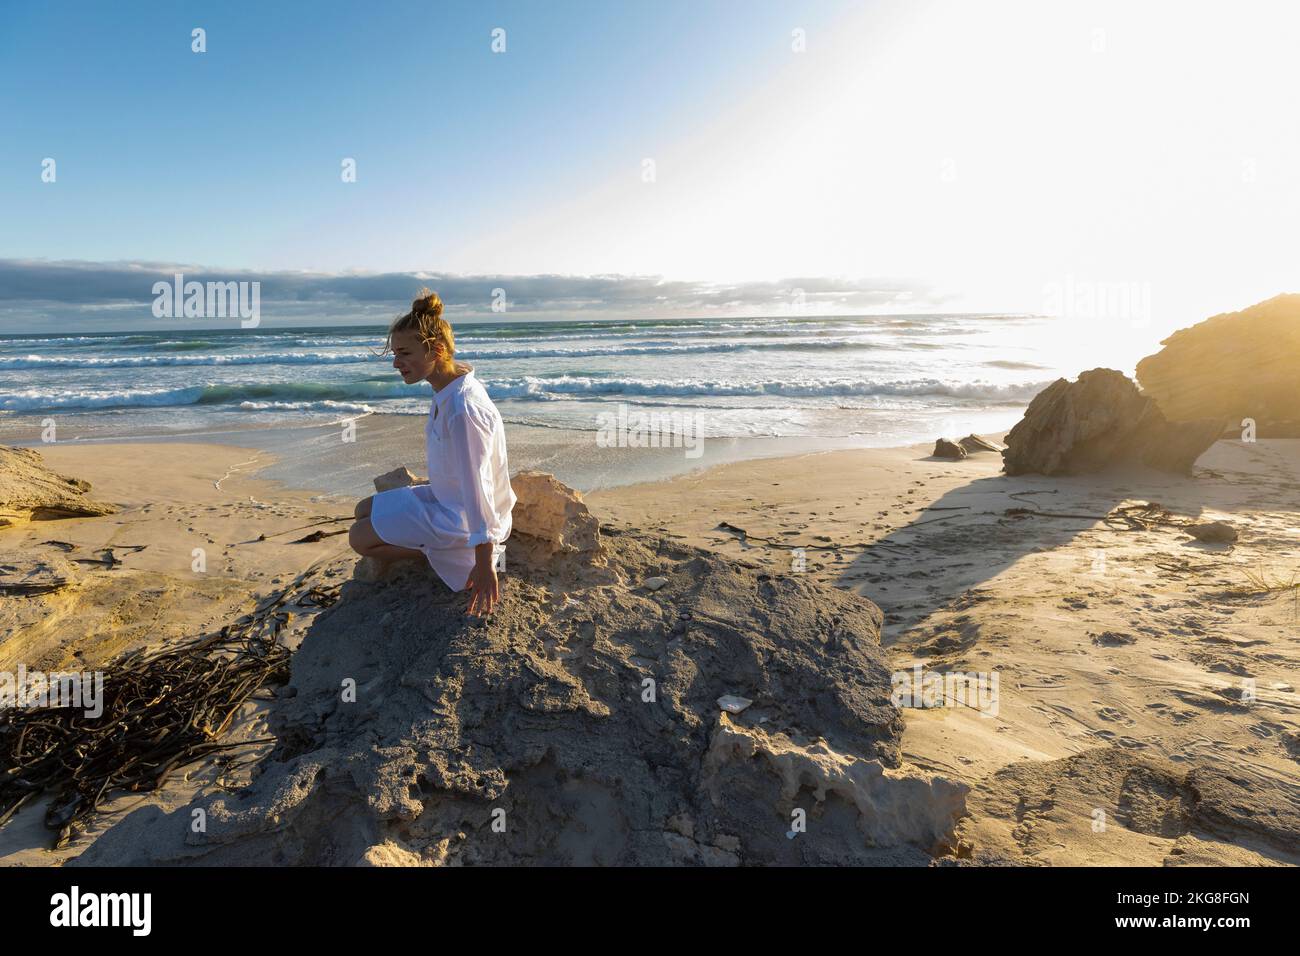 Afrique du Sud, Hermanus, adolescente (16-17) assise sur des rochers sur la plage Banque D'Images